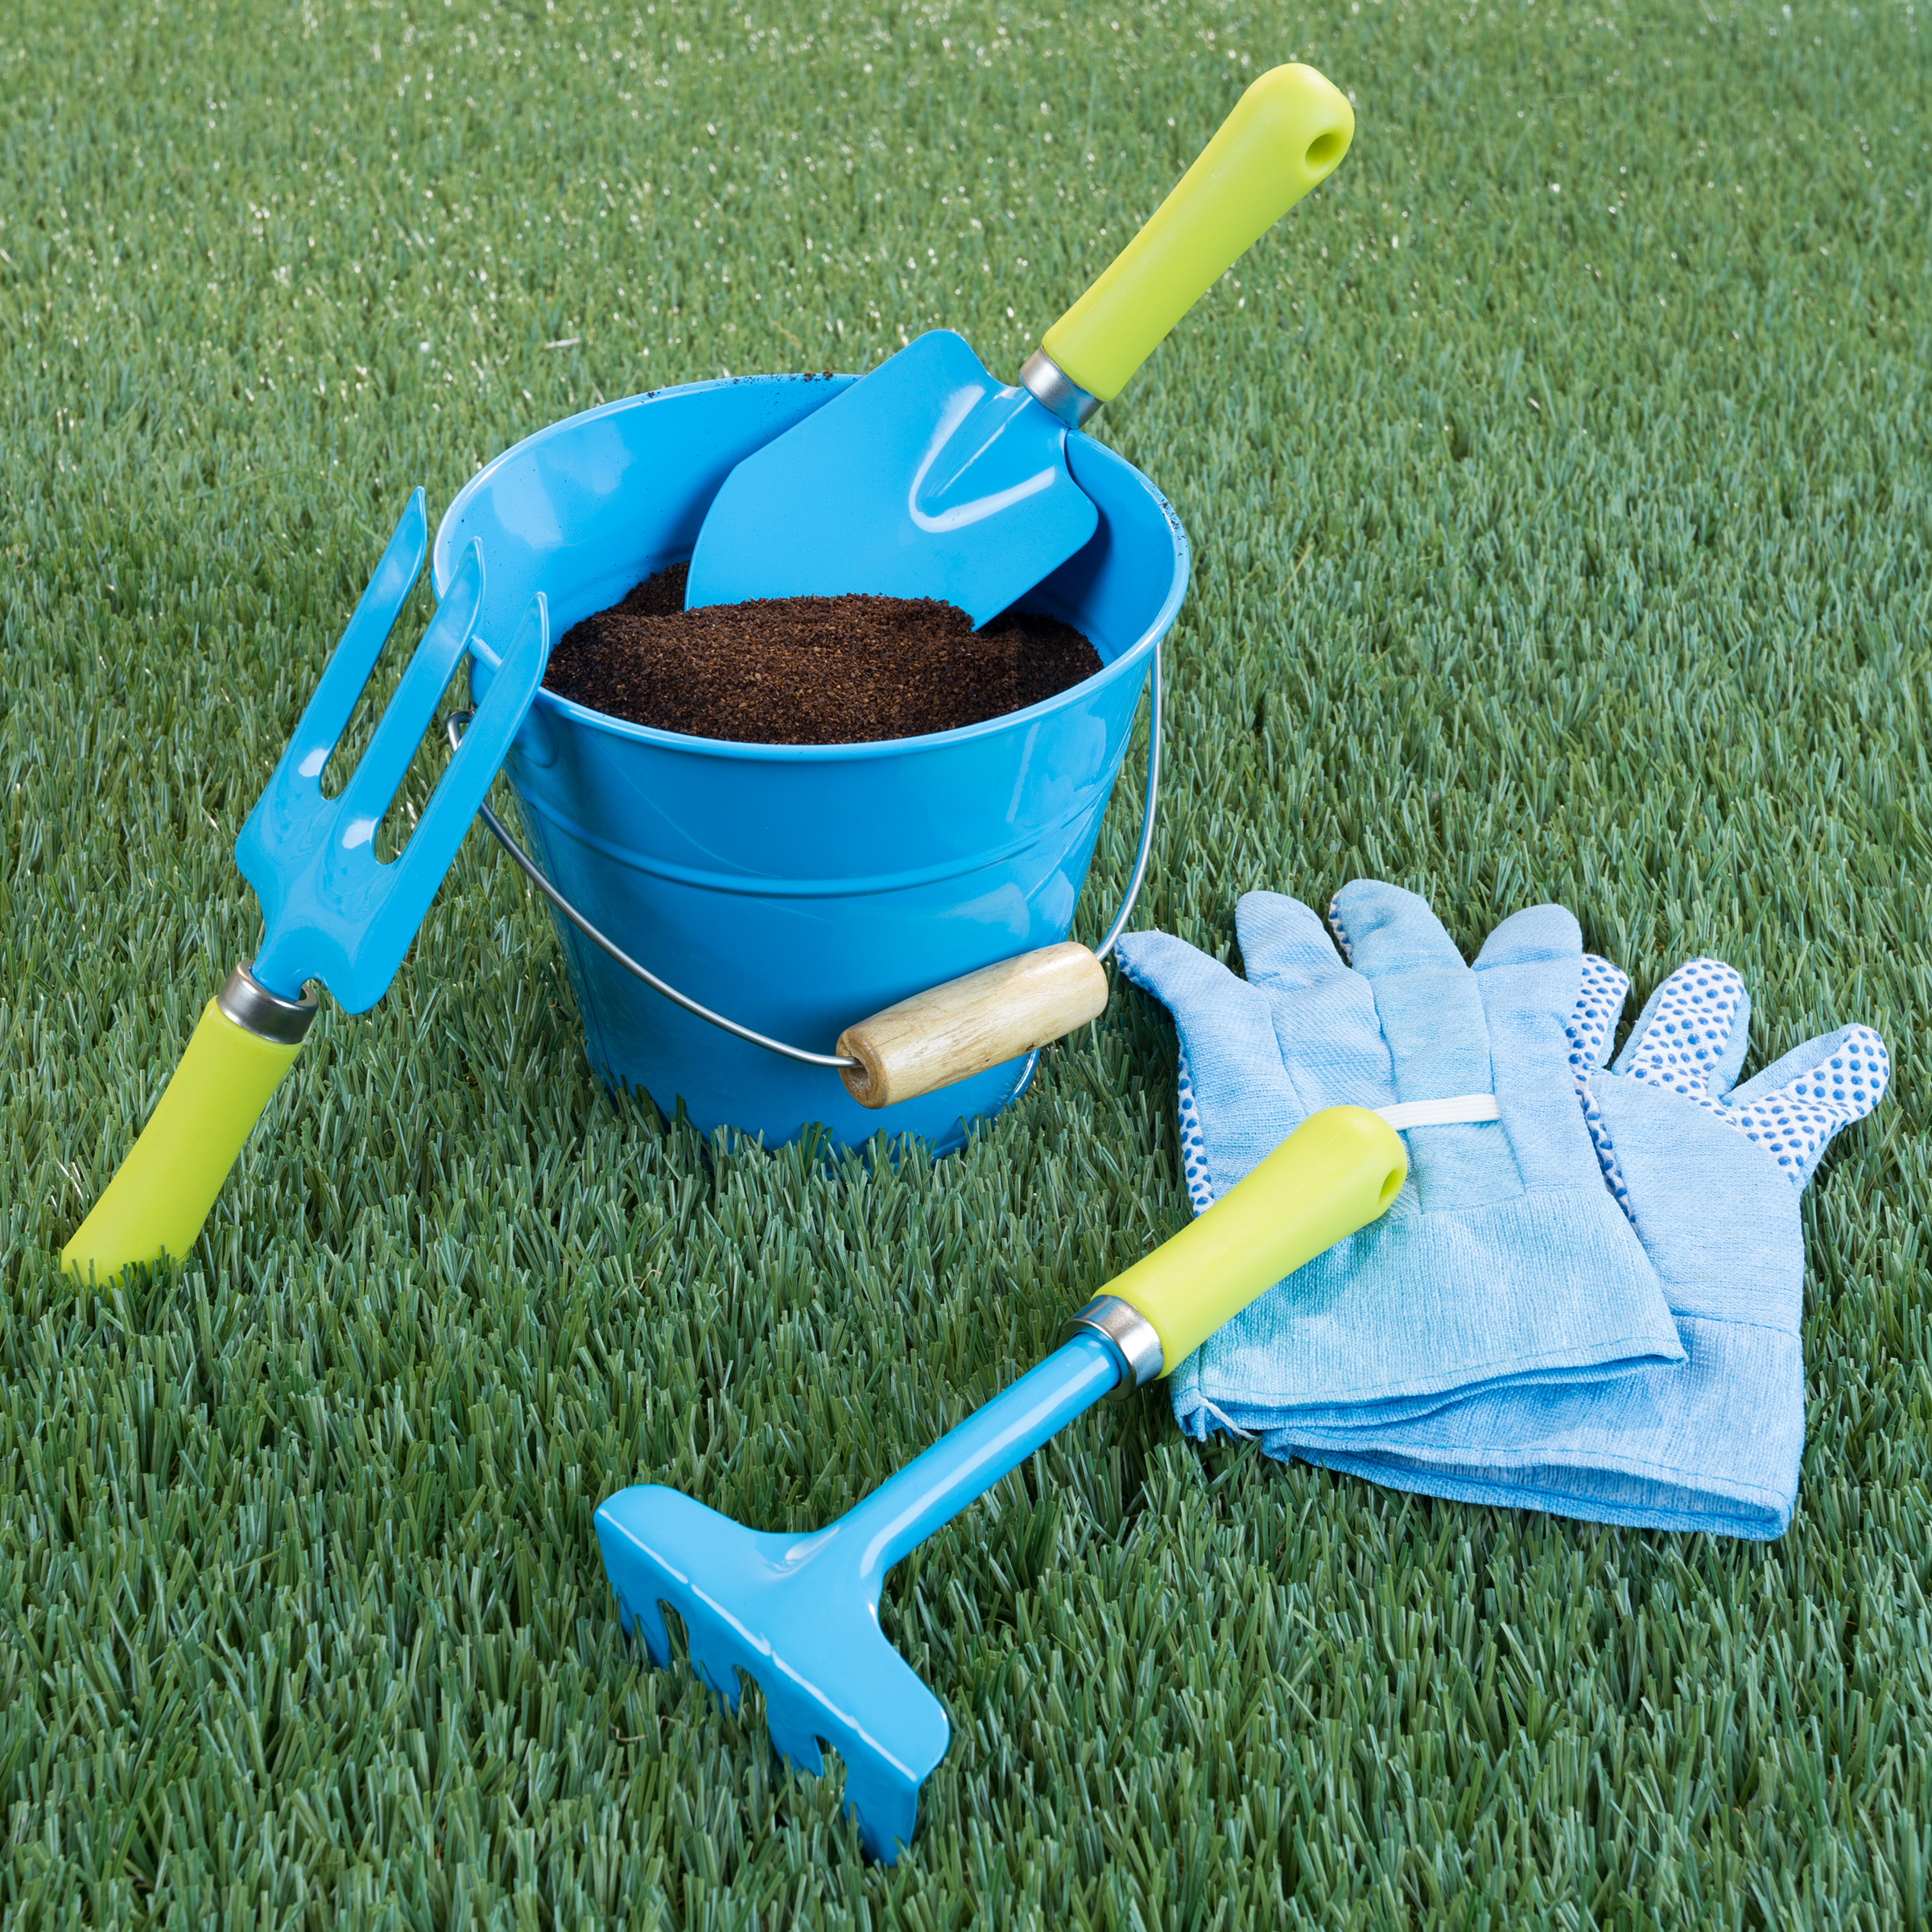 Kid's Garden Tool Set with Child Safe Shovel, Rake, Fork, Gloves ...